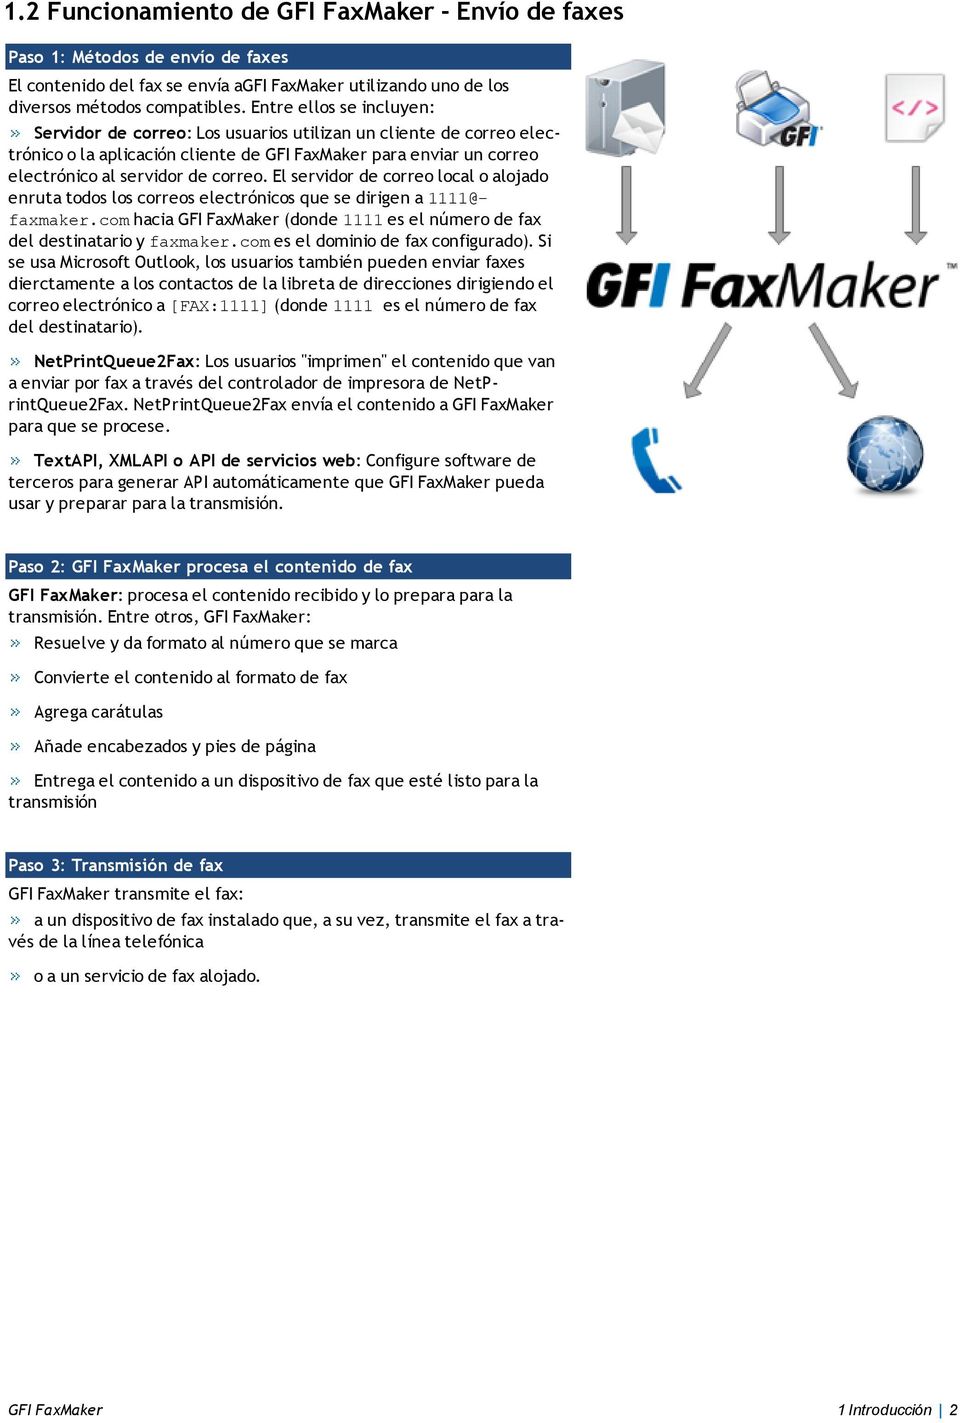 El servidor de correo local o alojado enruta todos los correos electrónicos que se dirigen a 1111@- faxmaker.com hacia GFI FaxMaker (donde 1111 es el número de fax del destinatario y faxmaker.